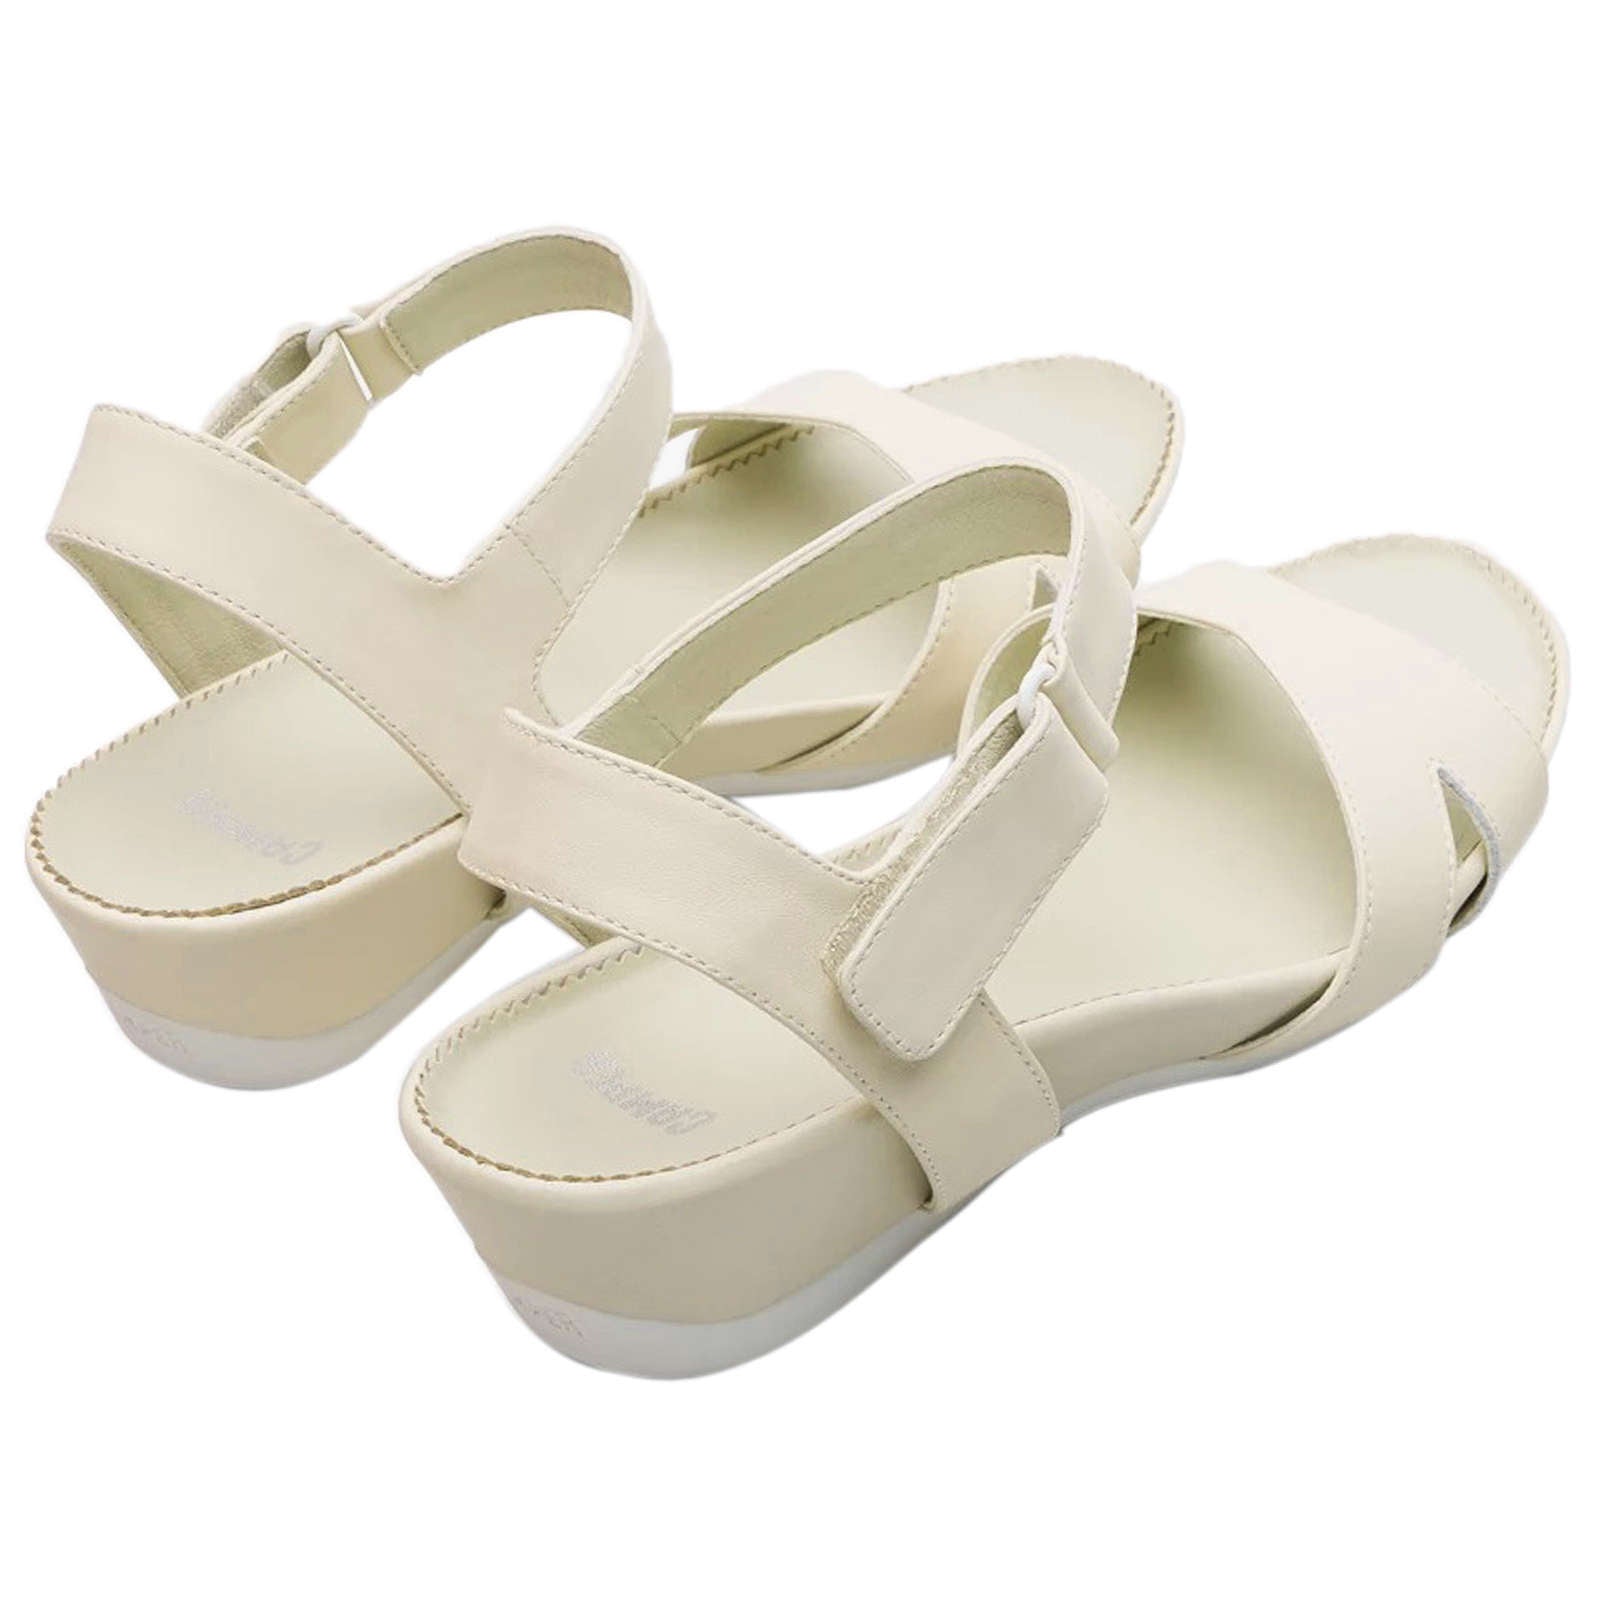 Camper Micro Calfskin Leather Women's Wedge Heel Sandals#color_light beige